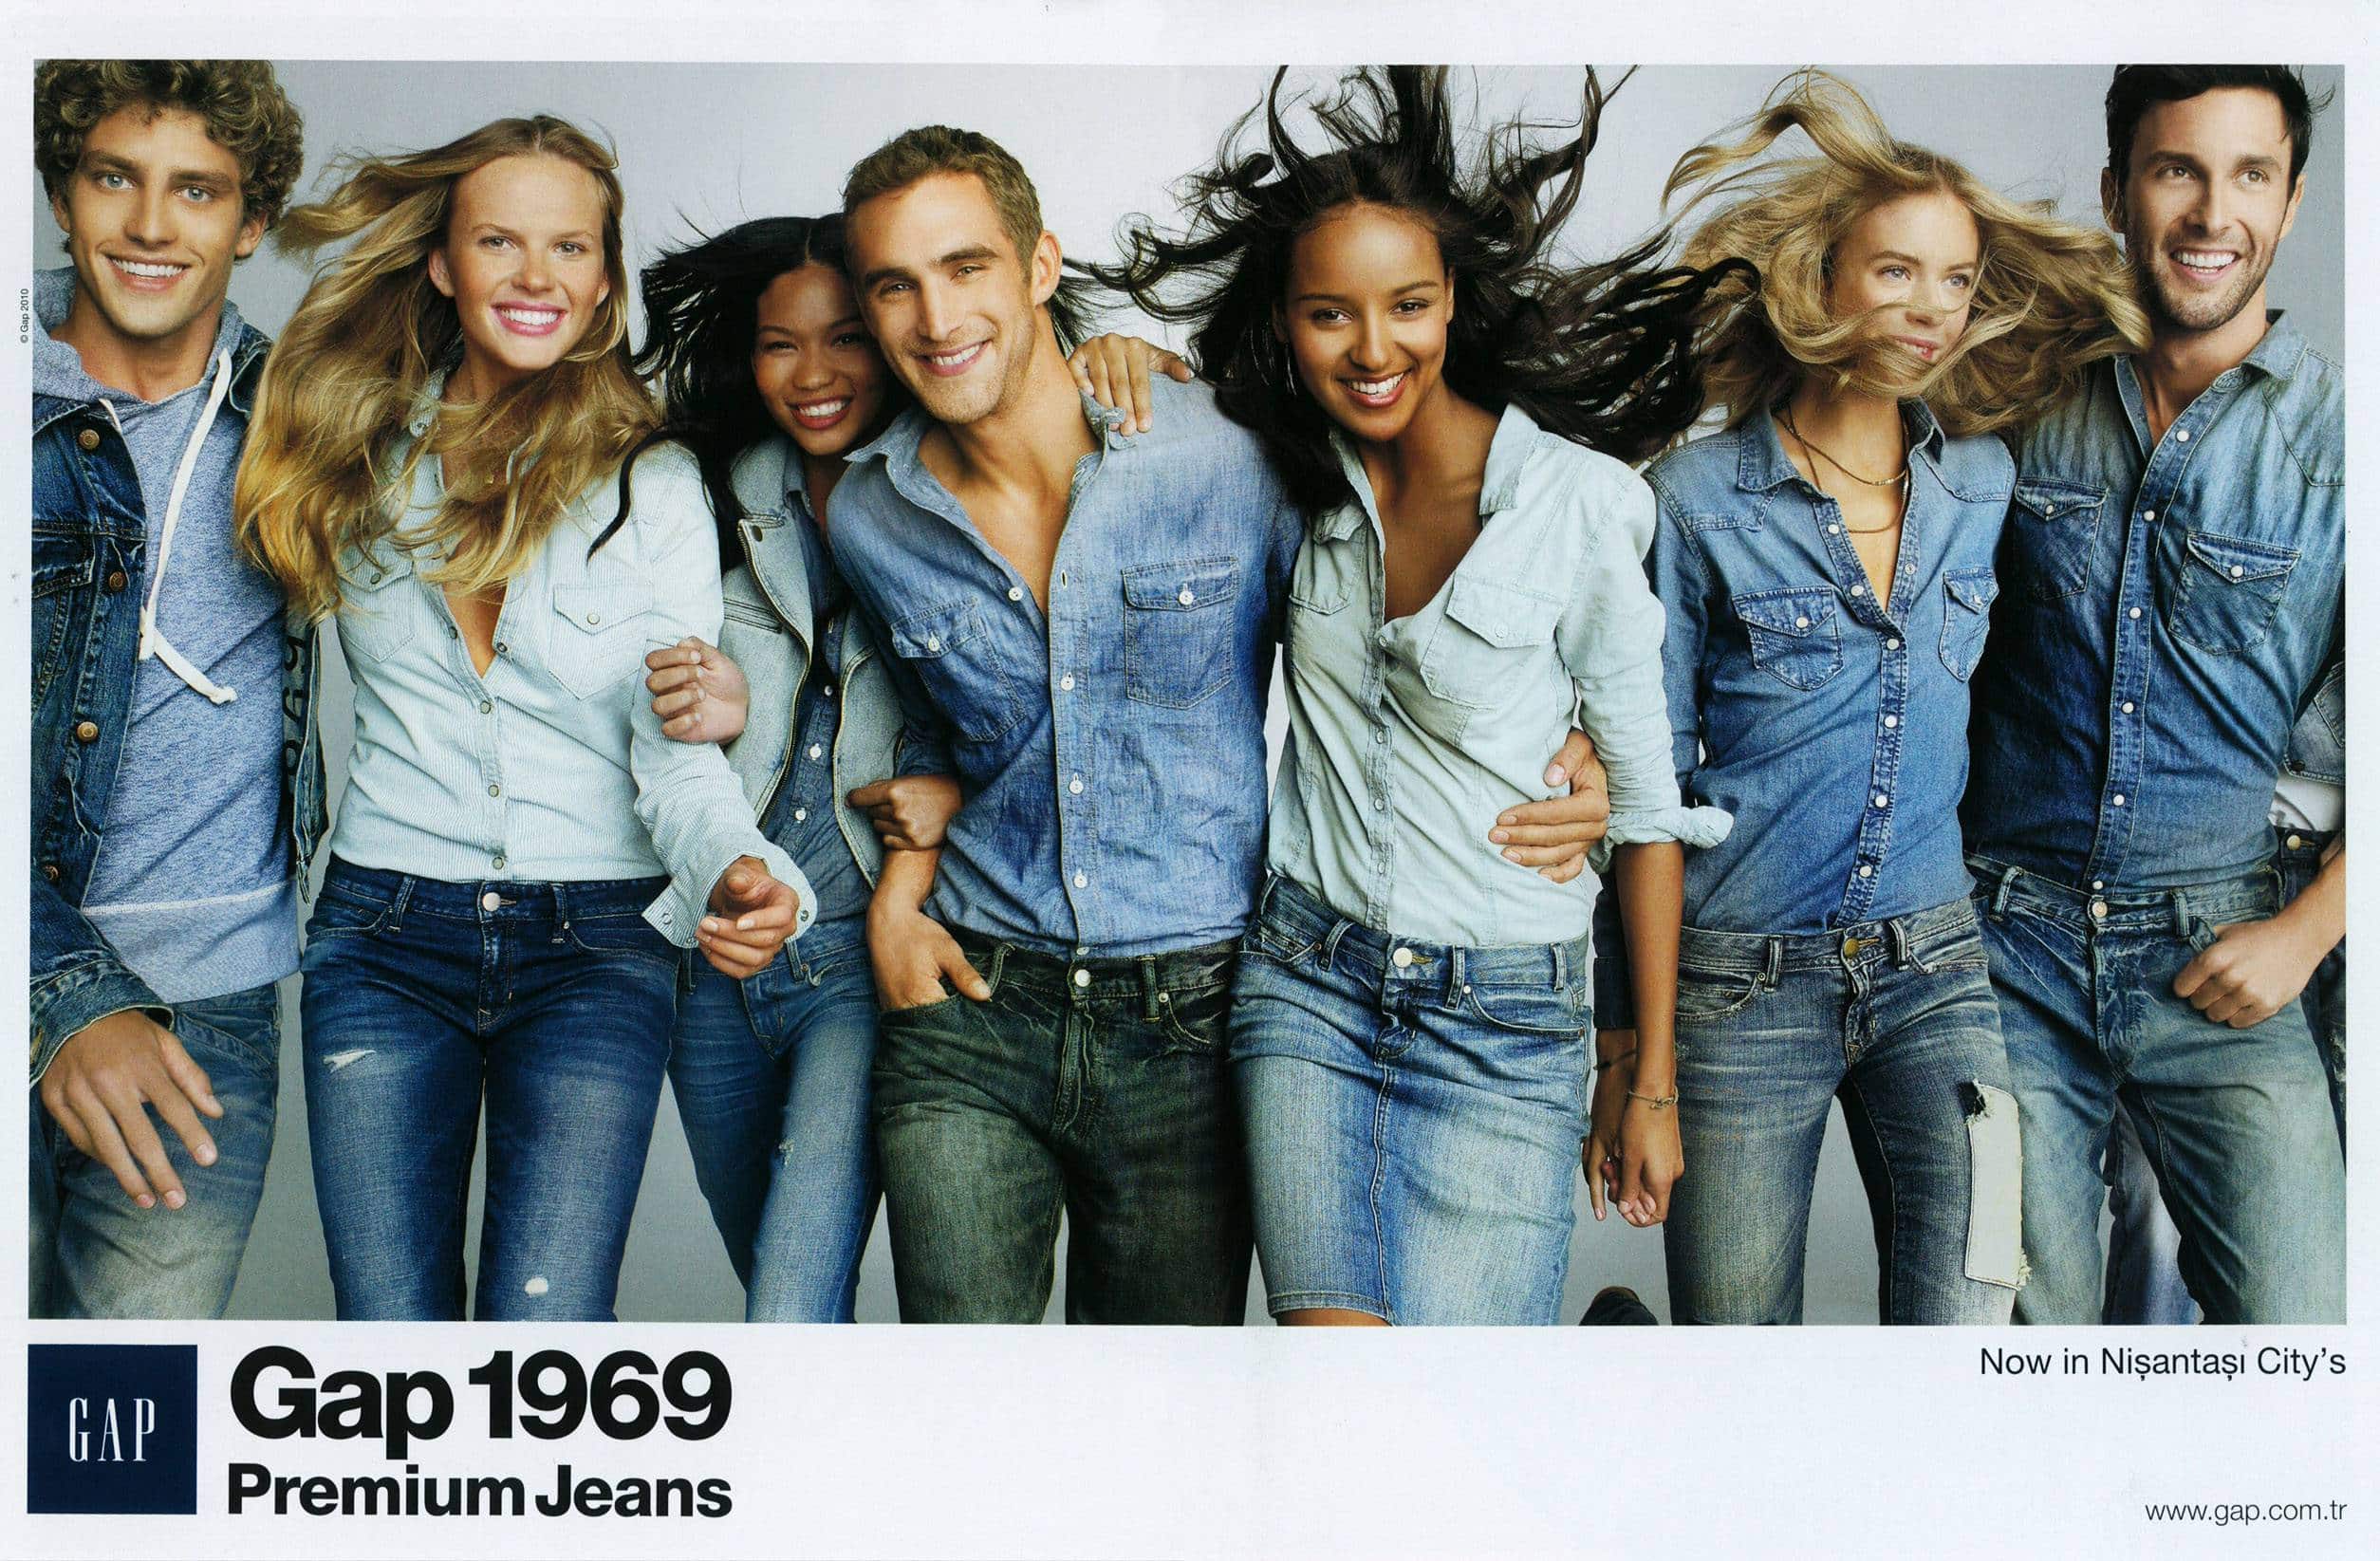 Молодой человек и много девушек. Джинсовый стиль. Фотосессия в джинсах. Молодежь в джинсовой одежде. Реклама джинсовой одежды.